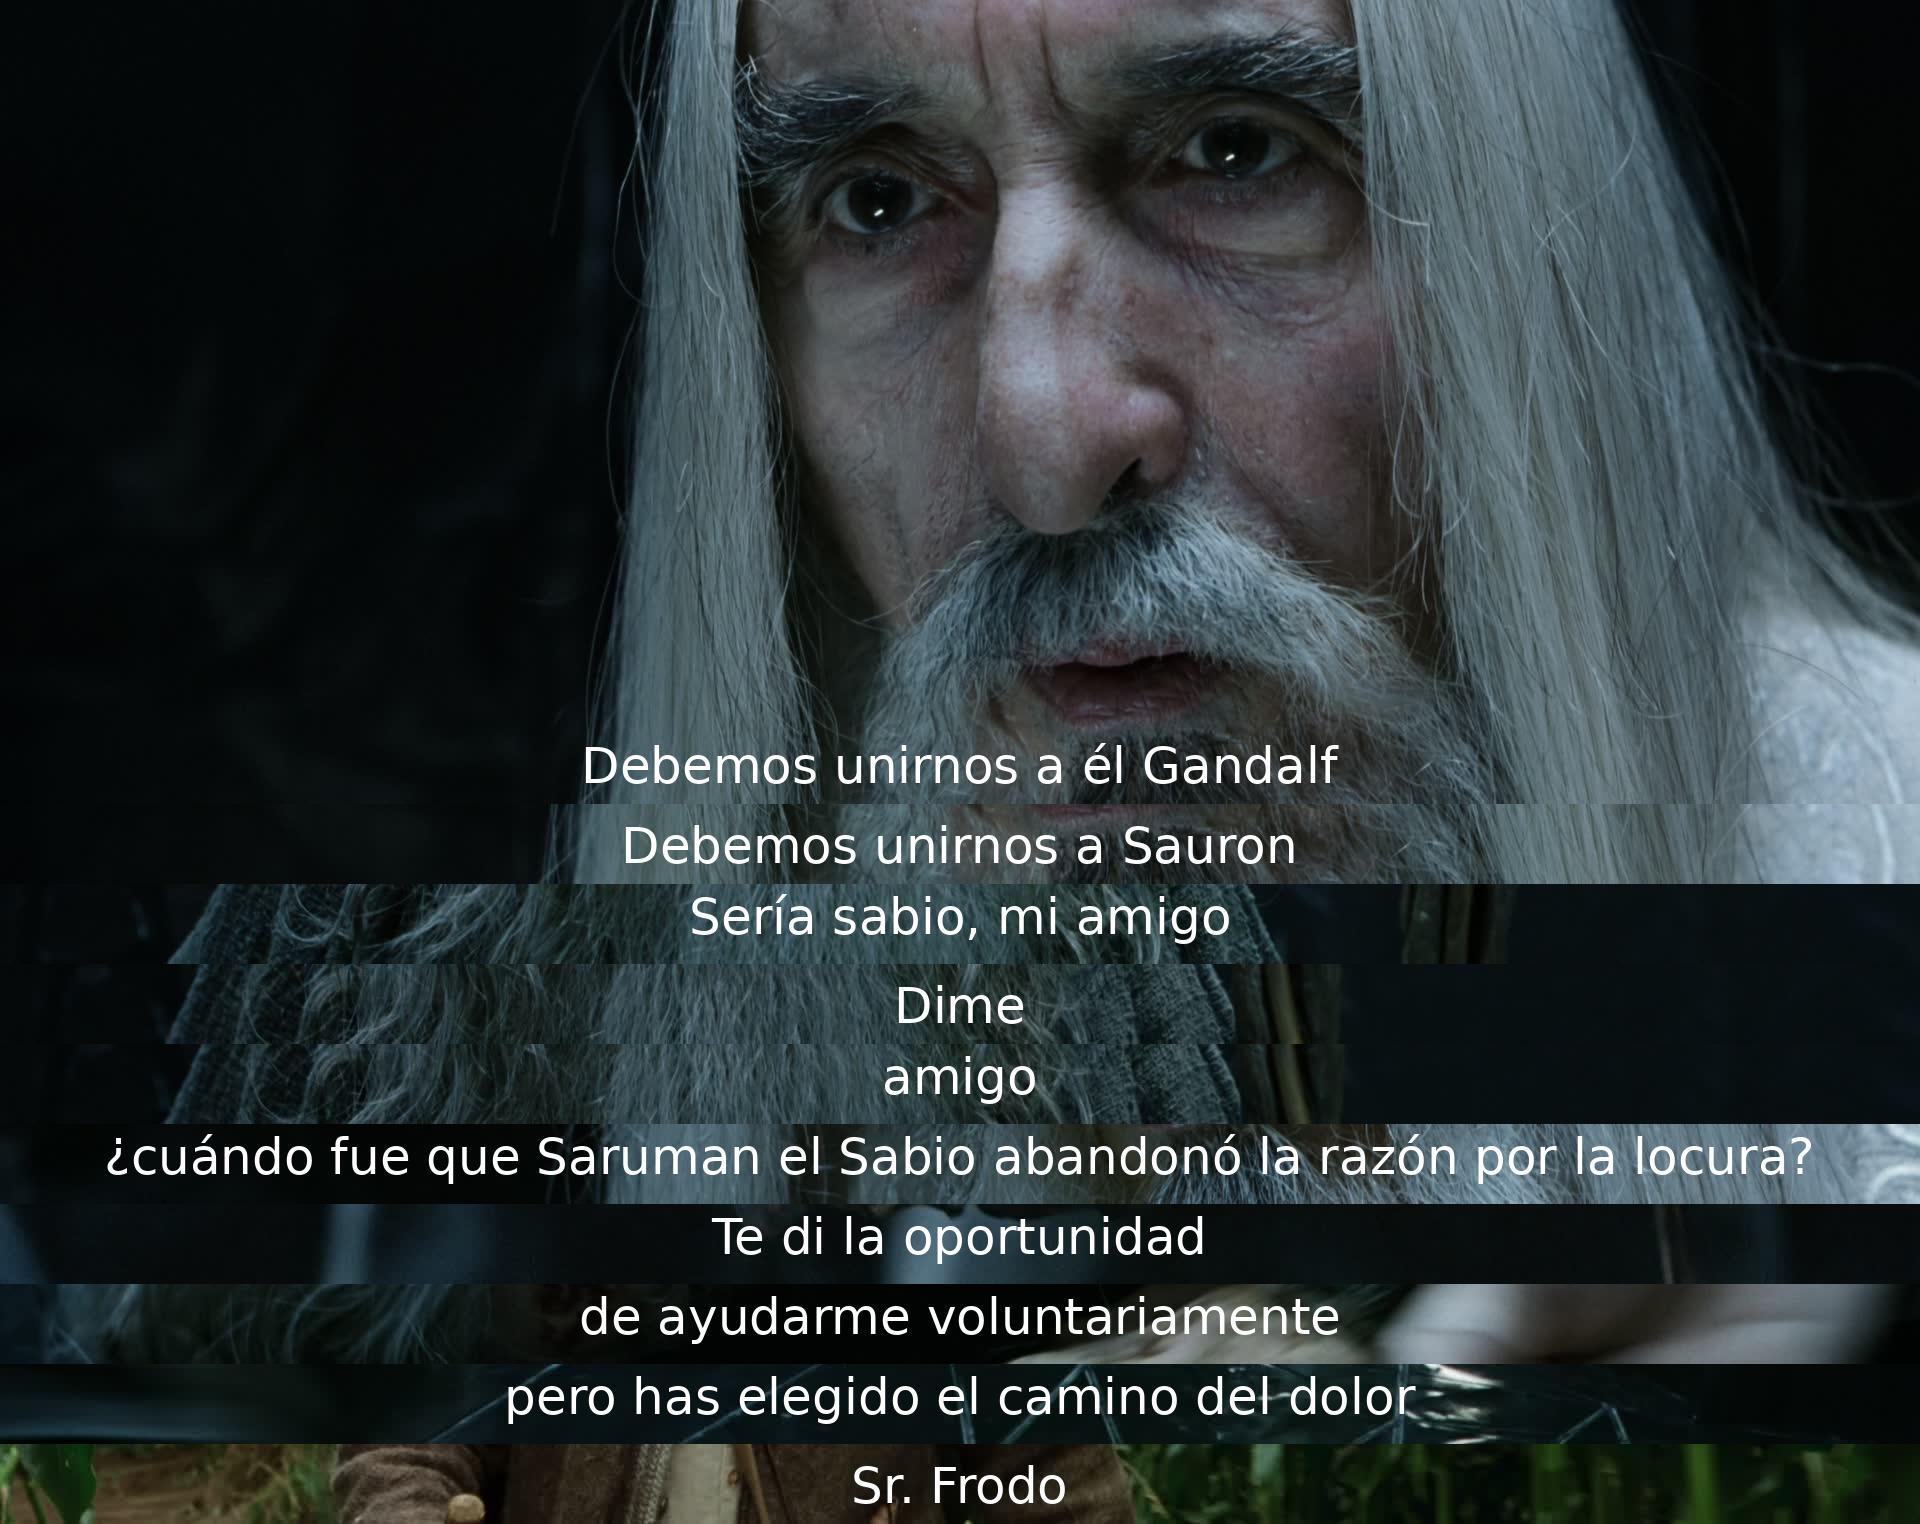 Los personajes deciden unirse a Sauron. Gandalf pregunta cuándo Saruman se volvió loco, y Frodo elige un camino diferente, causando dolor.